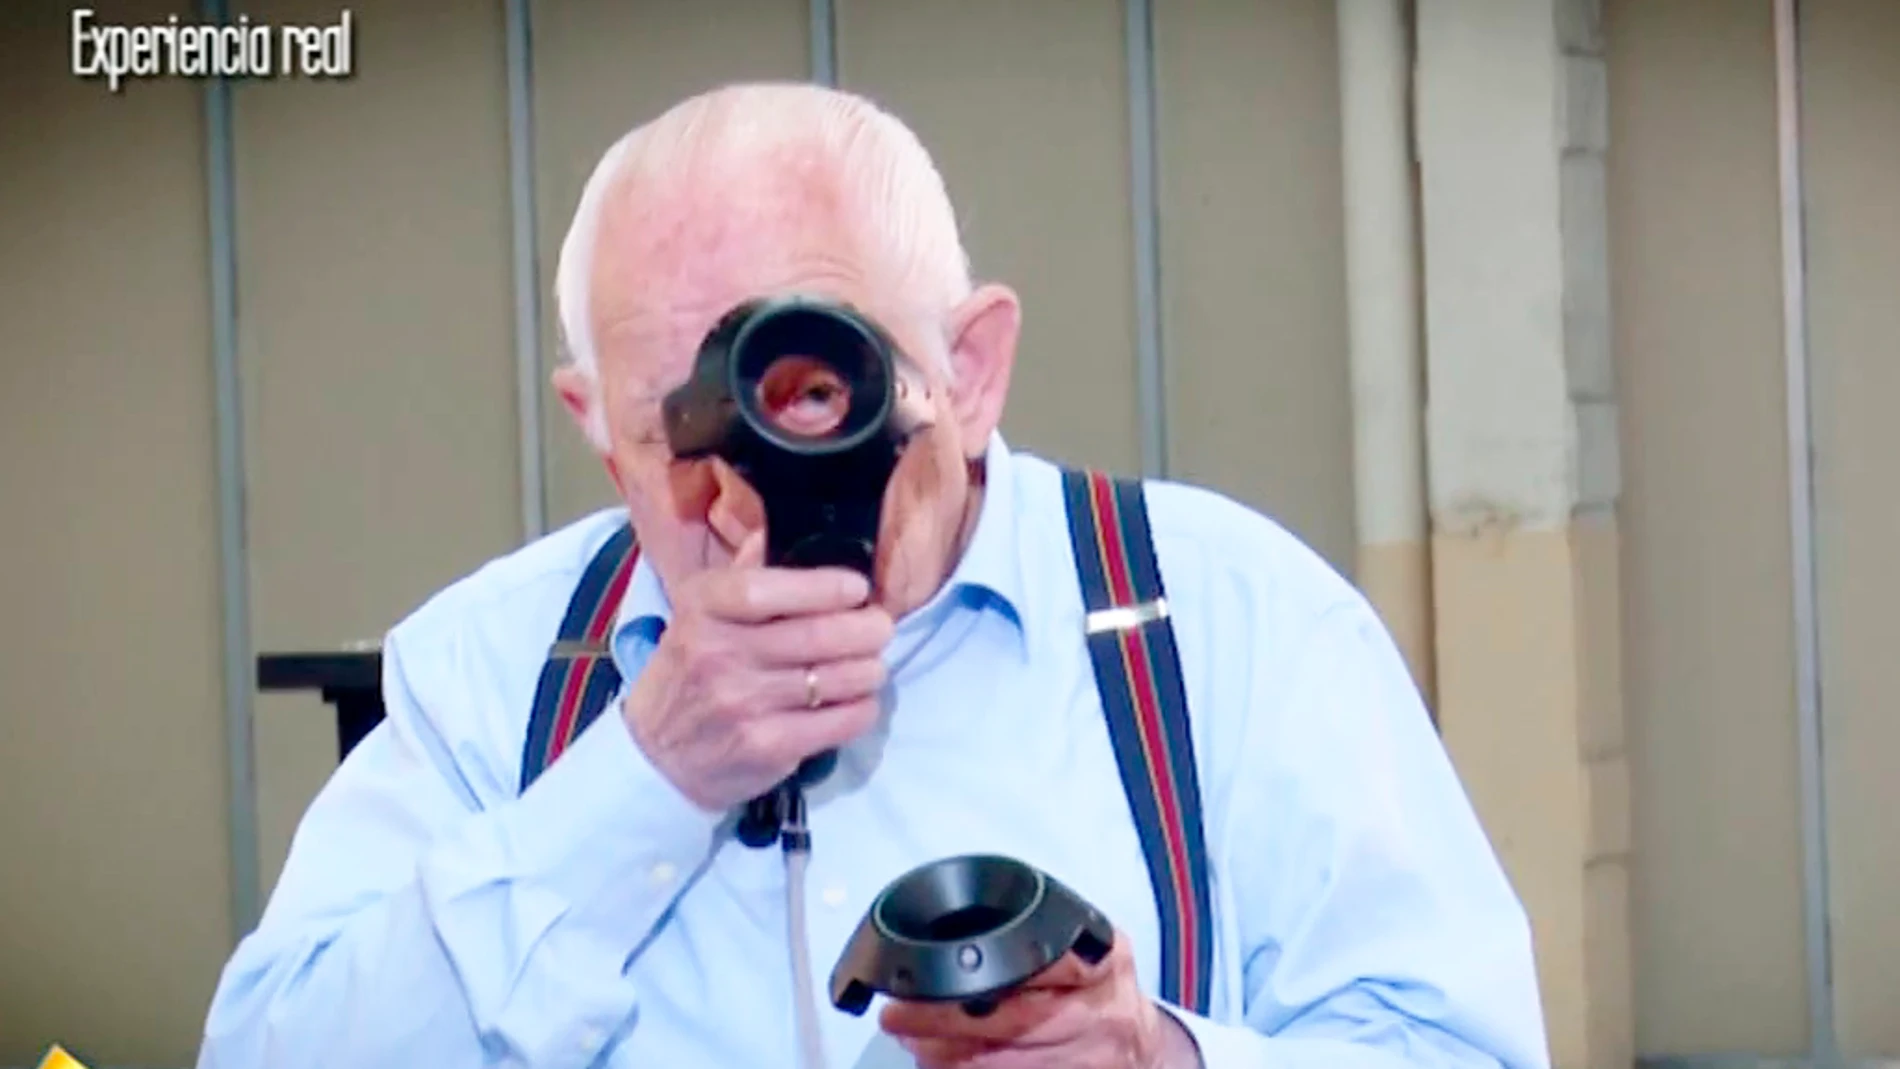 ¿Qué pasa cuando un señor de 90 años descubre la realidad virtual?